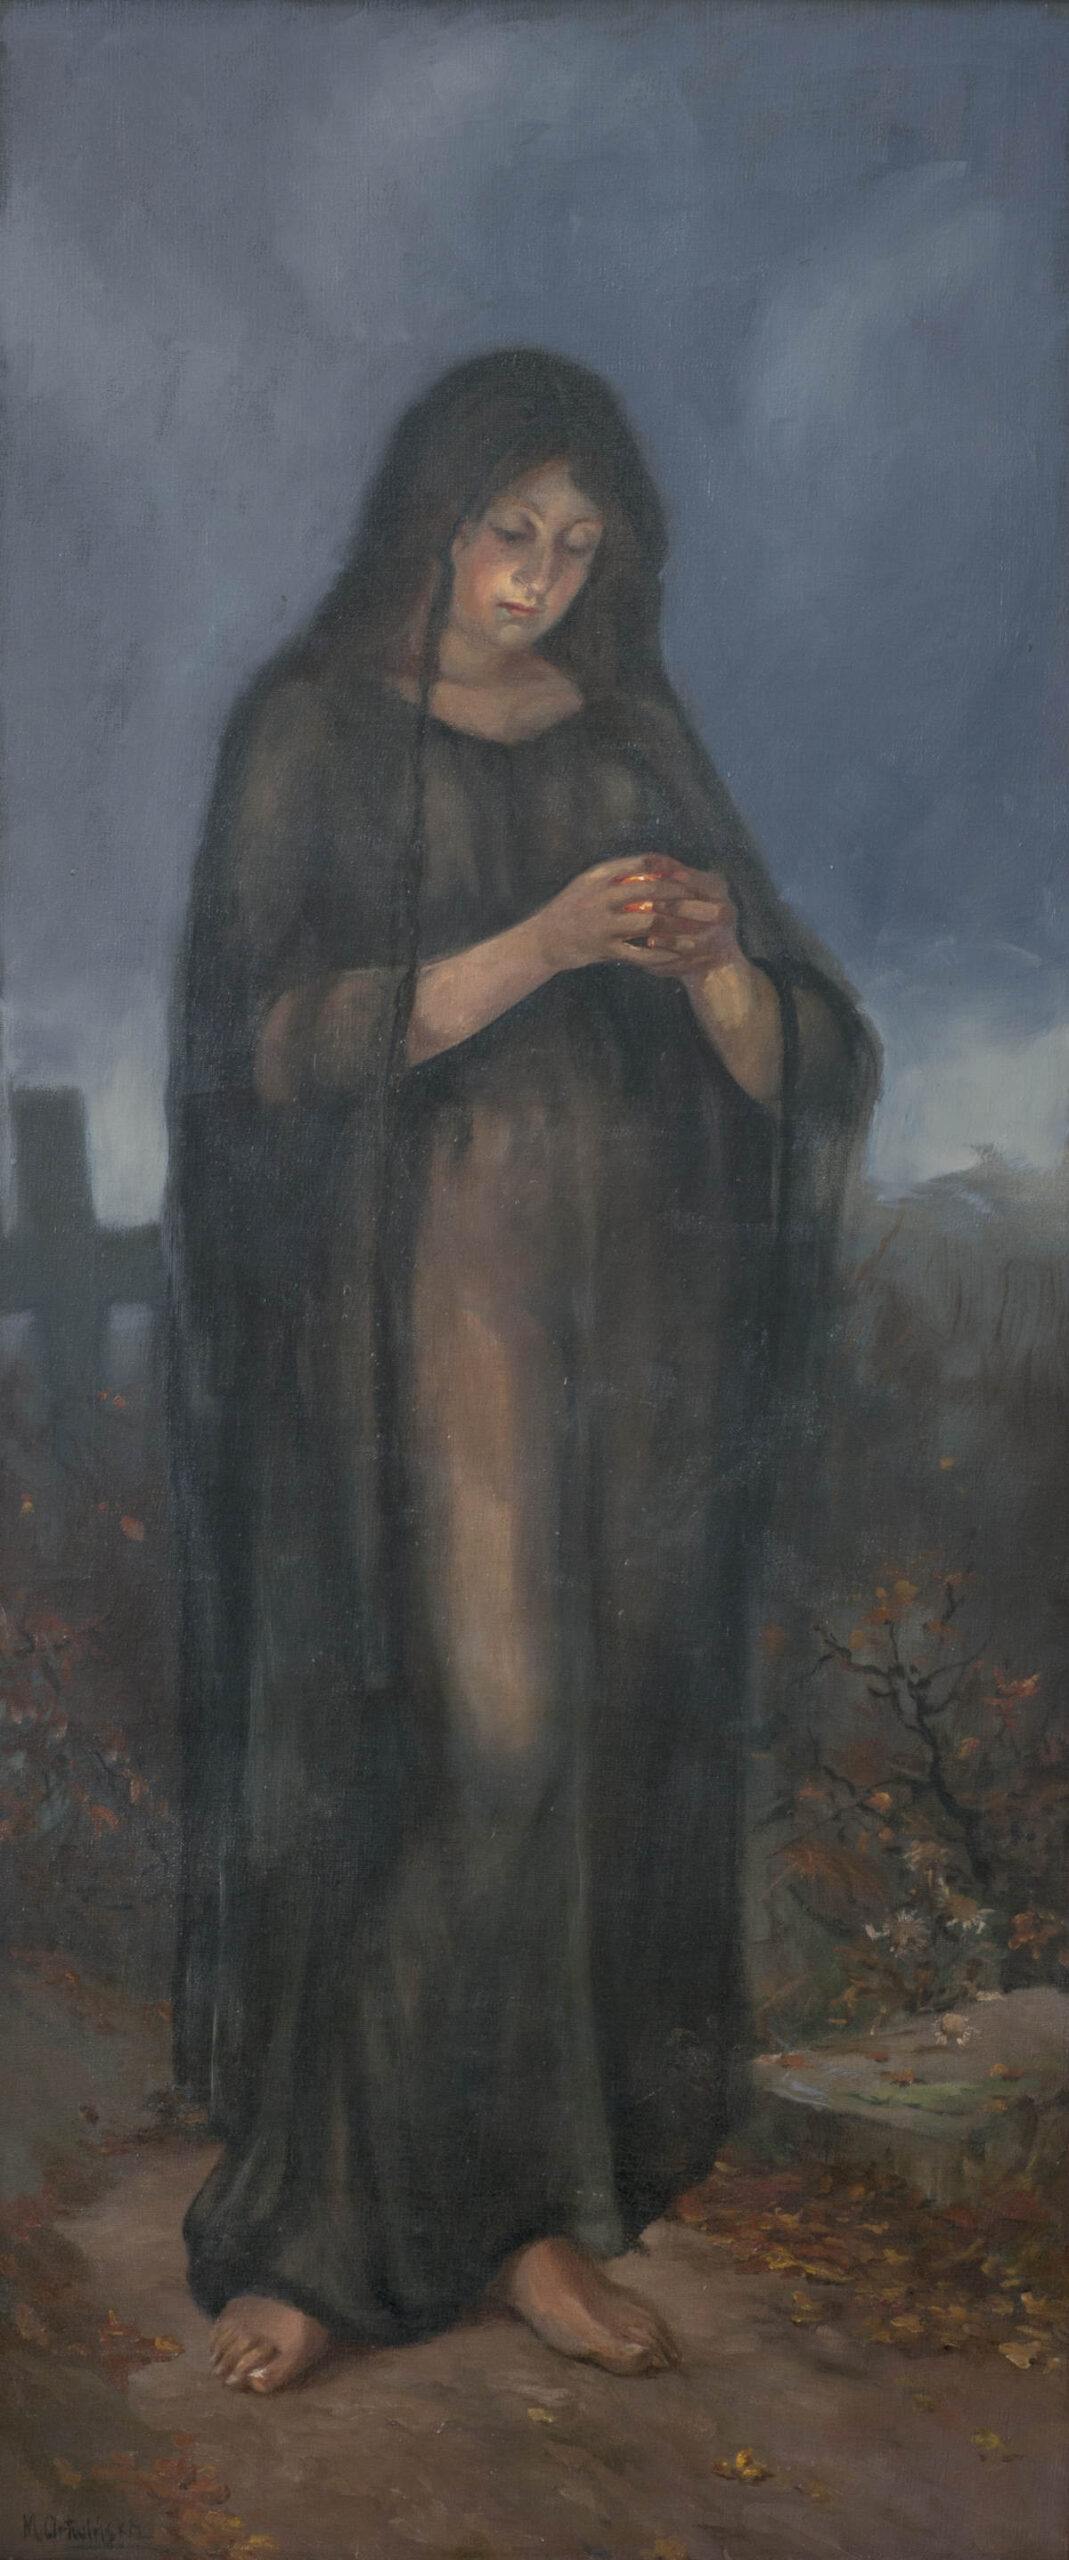 Kobieta na tle cmentarza, Maria Artwińska, Przemyśl, 1906-1920, ze zbiorów Muzeum Narodowego Ziemi Przemyskiej, MPS-162